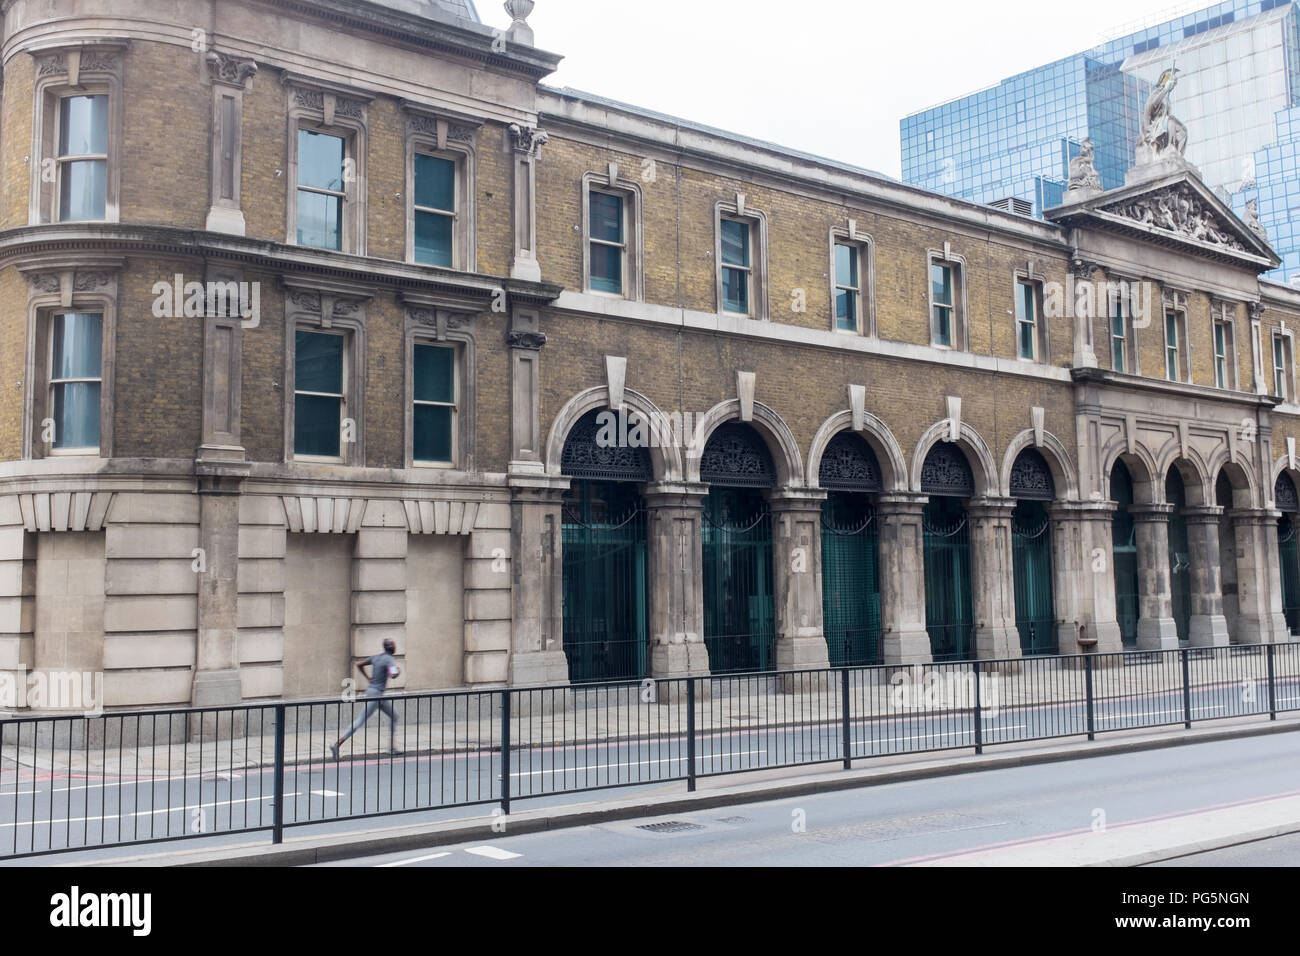 El Old Billingsgate Fish Market edificio victoriano en Lower Thames Street, de Londres, que ahora es una hospitalidad y eventos Foto de stock